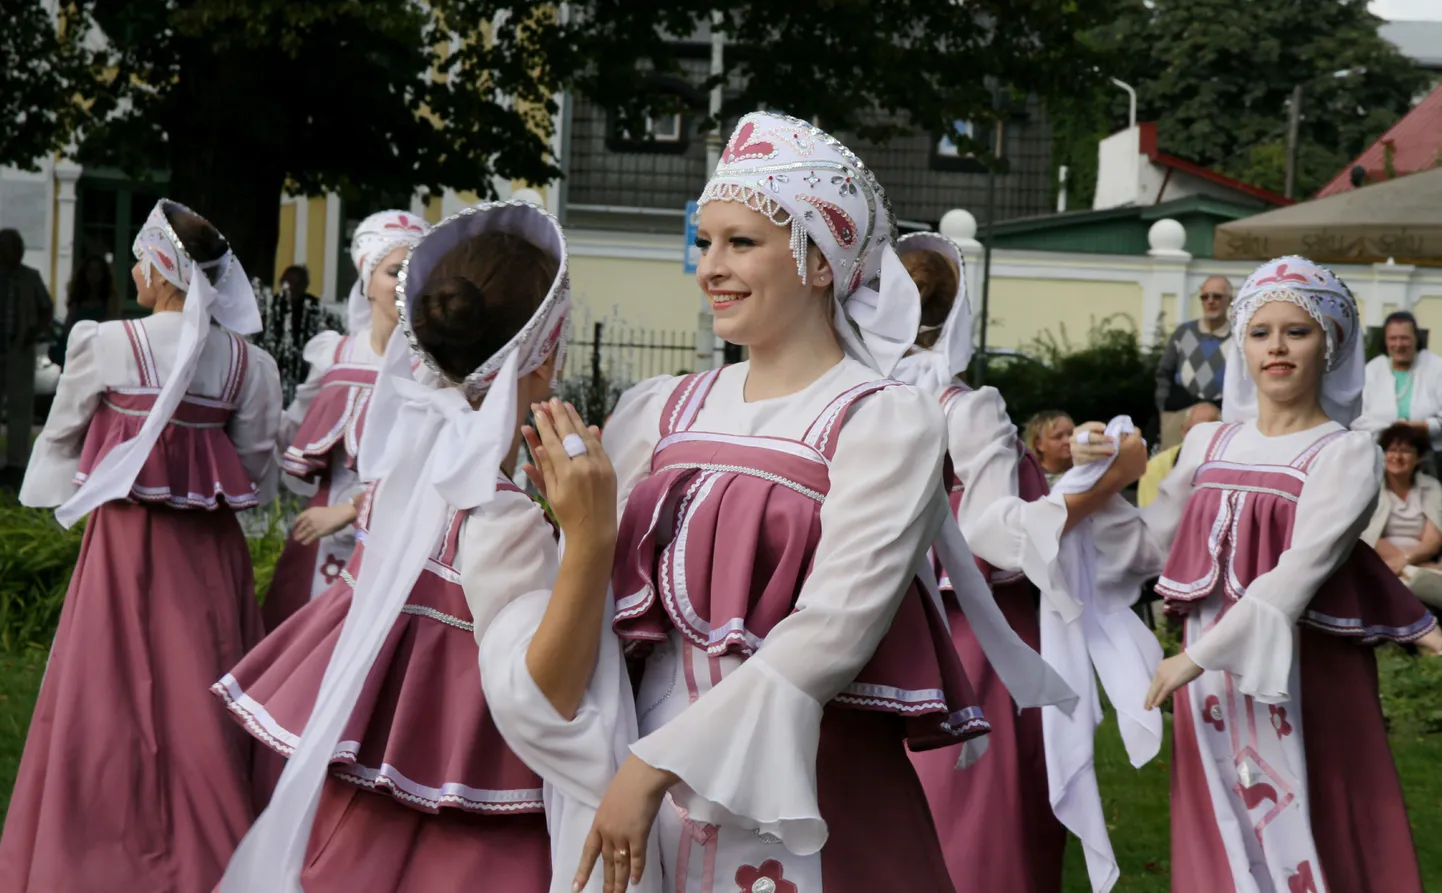 Viimati toimus slaavi kultuuri festival "Svetotš" Pärnus kolm aastat tagasi. Lauljad-tantsijad esinevad linnas ka tänavusel festivalil.